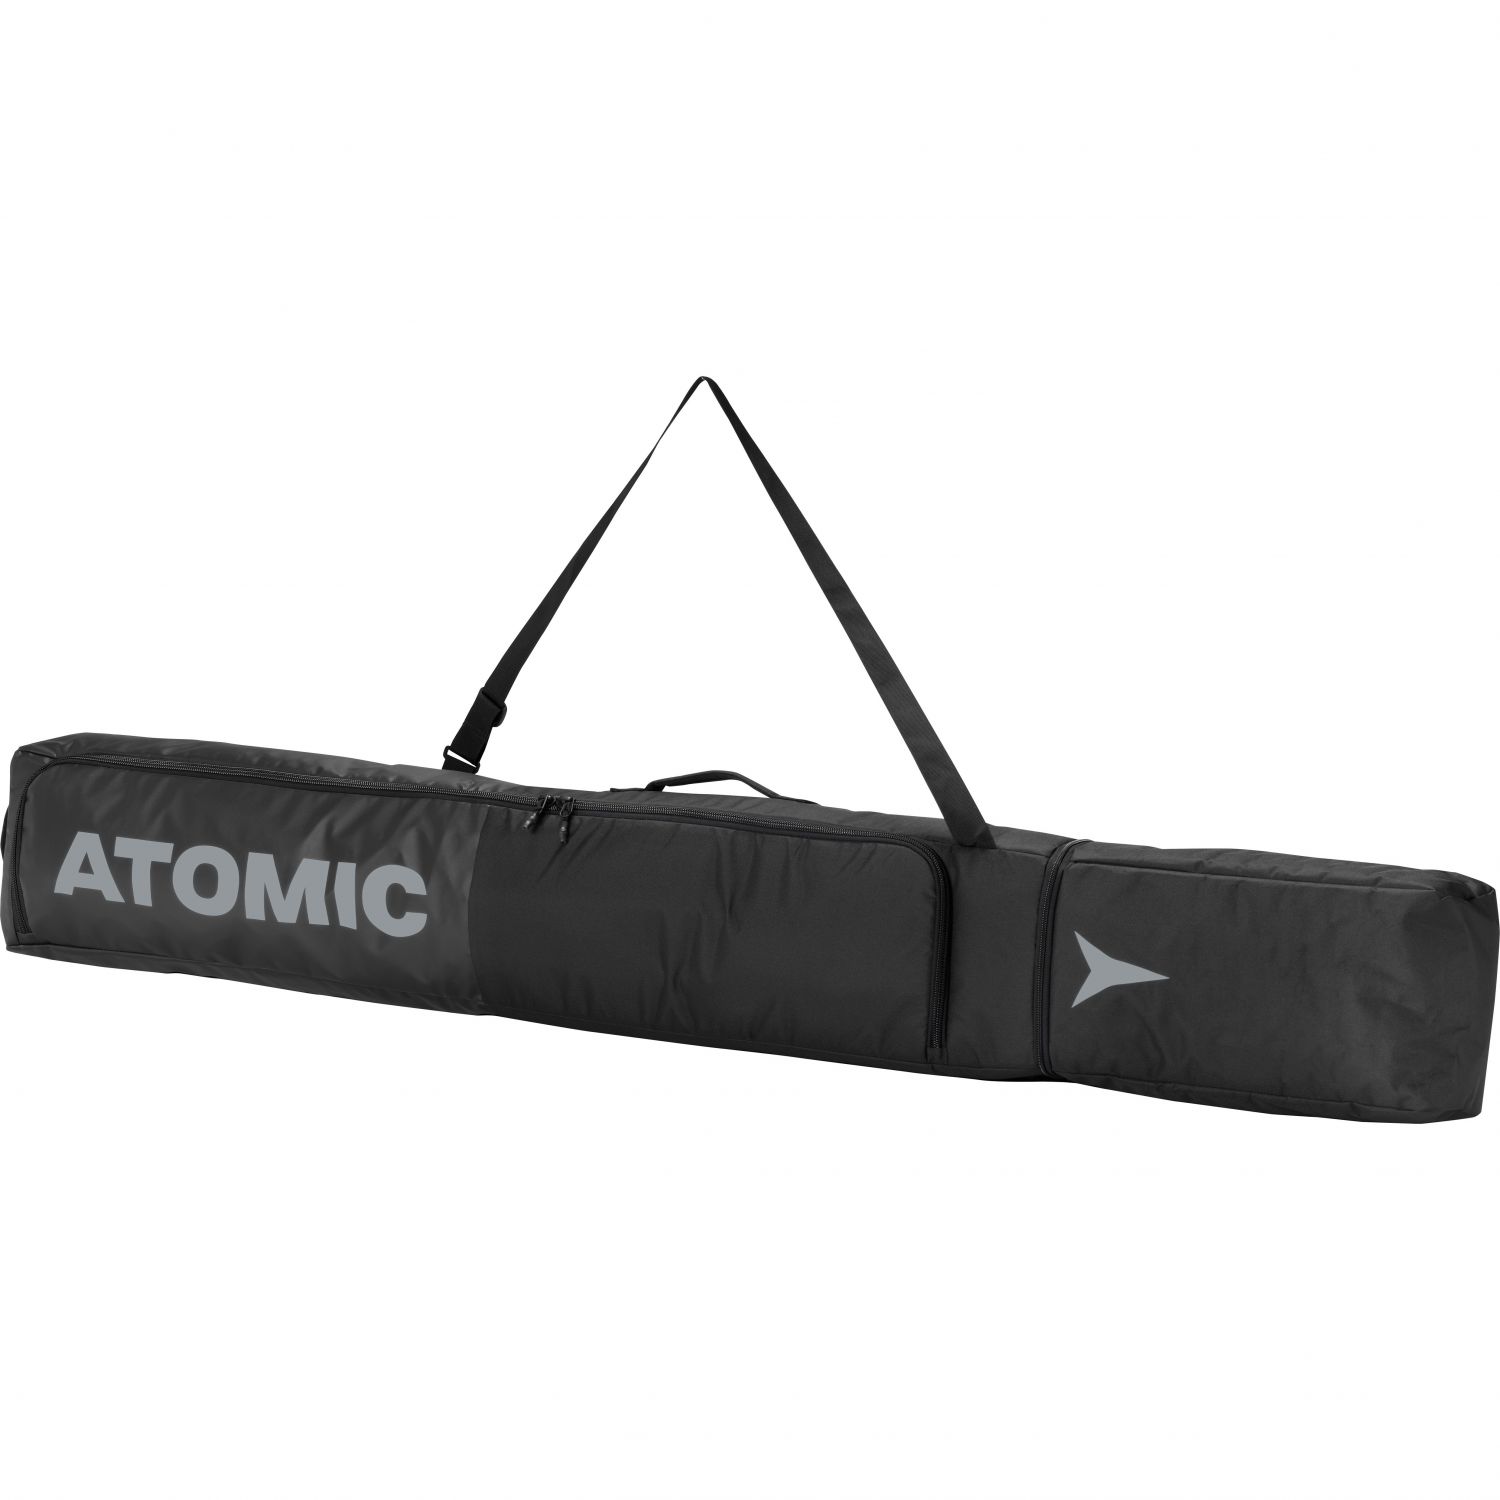 Atomic Ski Bag, sort